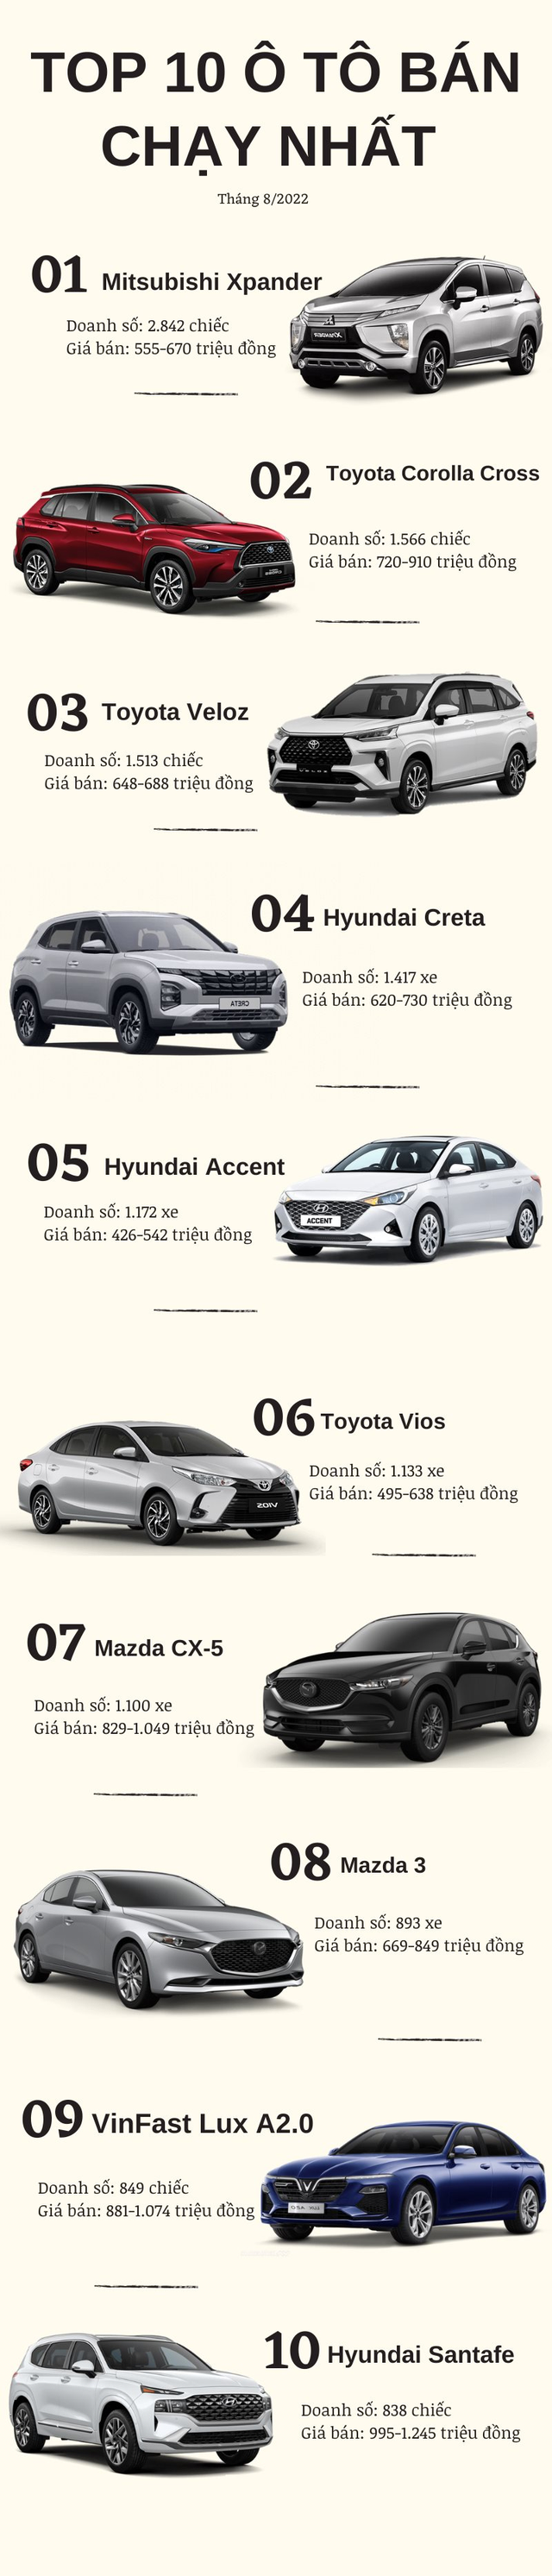 Top 10 ô tô bán chạy nhất tháng 8/2022: Mitsubishi Xpander dẫn đầu, VinFast Lux A2.0 vẫn lọt top, Kia lần đầu vắng bóng đại diện - Ảnh 1.